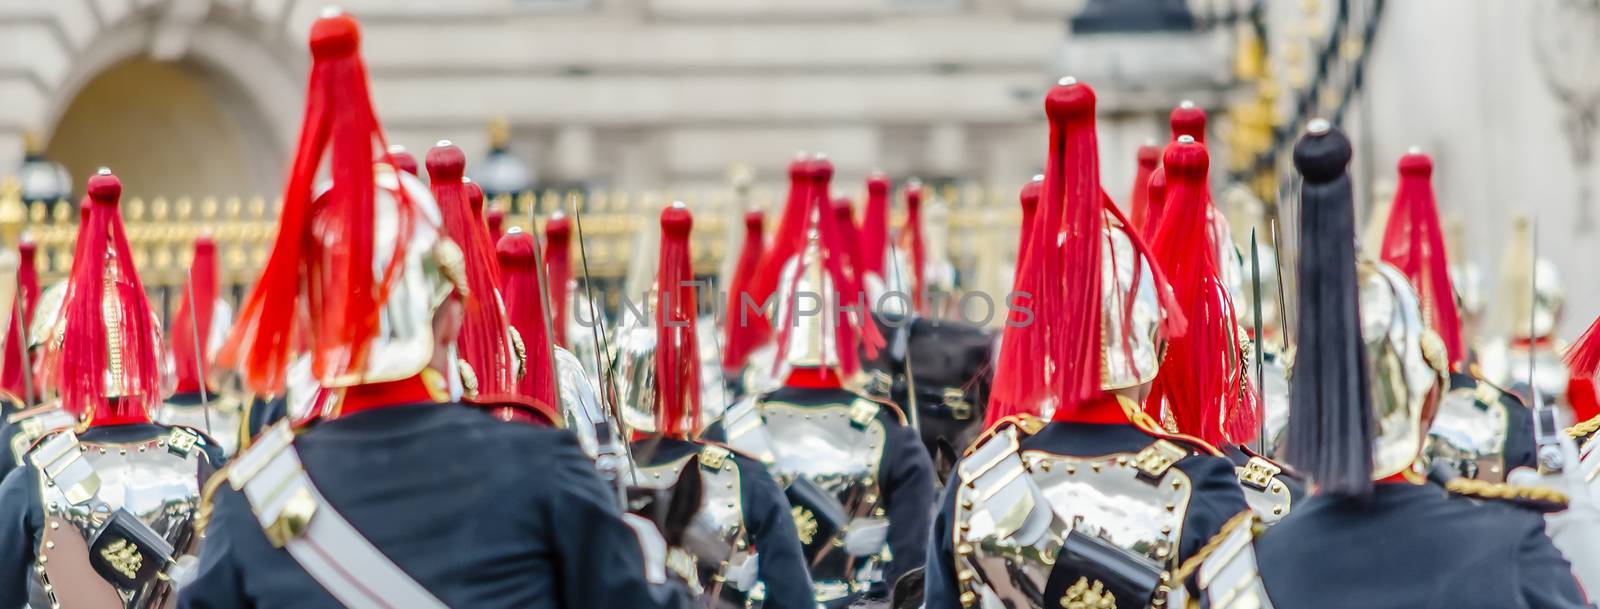 The guard ceremony at Buckingham Palace, London, UK by marcorubino